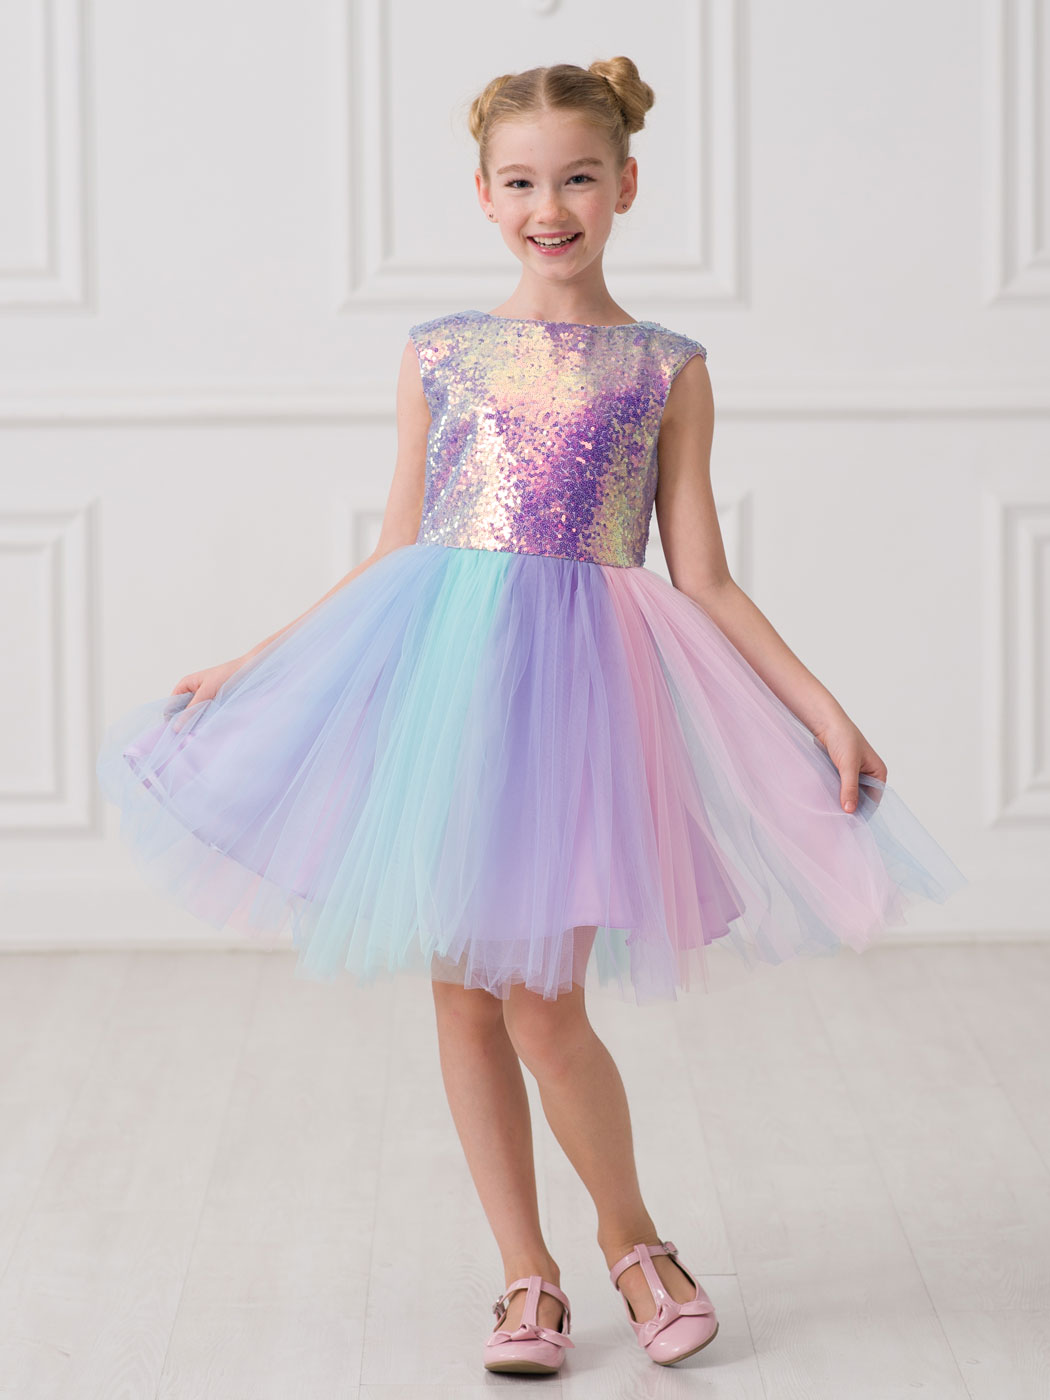 Фото товара Праздничное платье для девочки Принцесса Единорог-1 01215008-2 от Красавушка